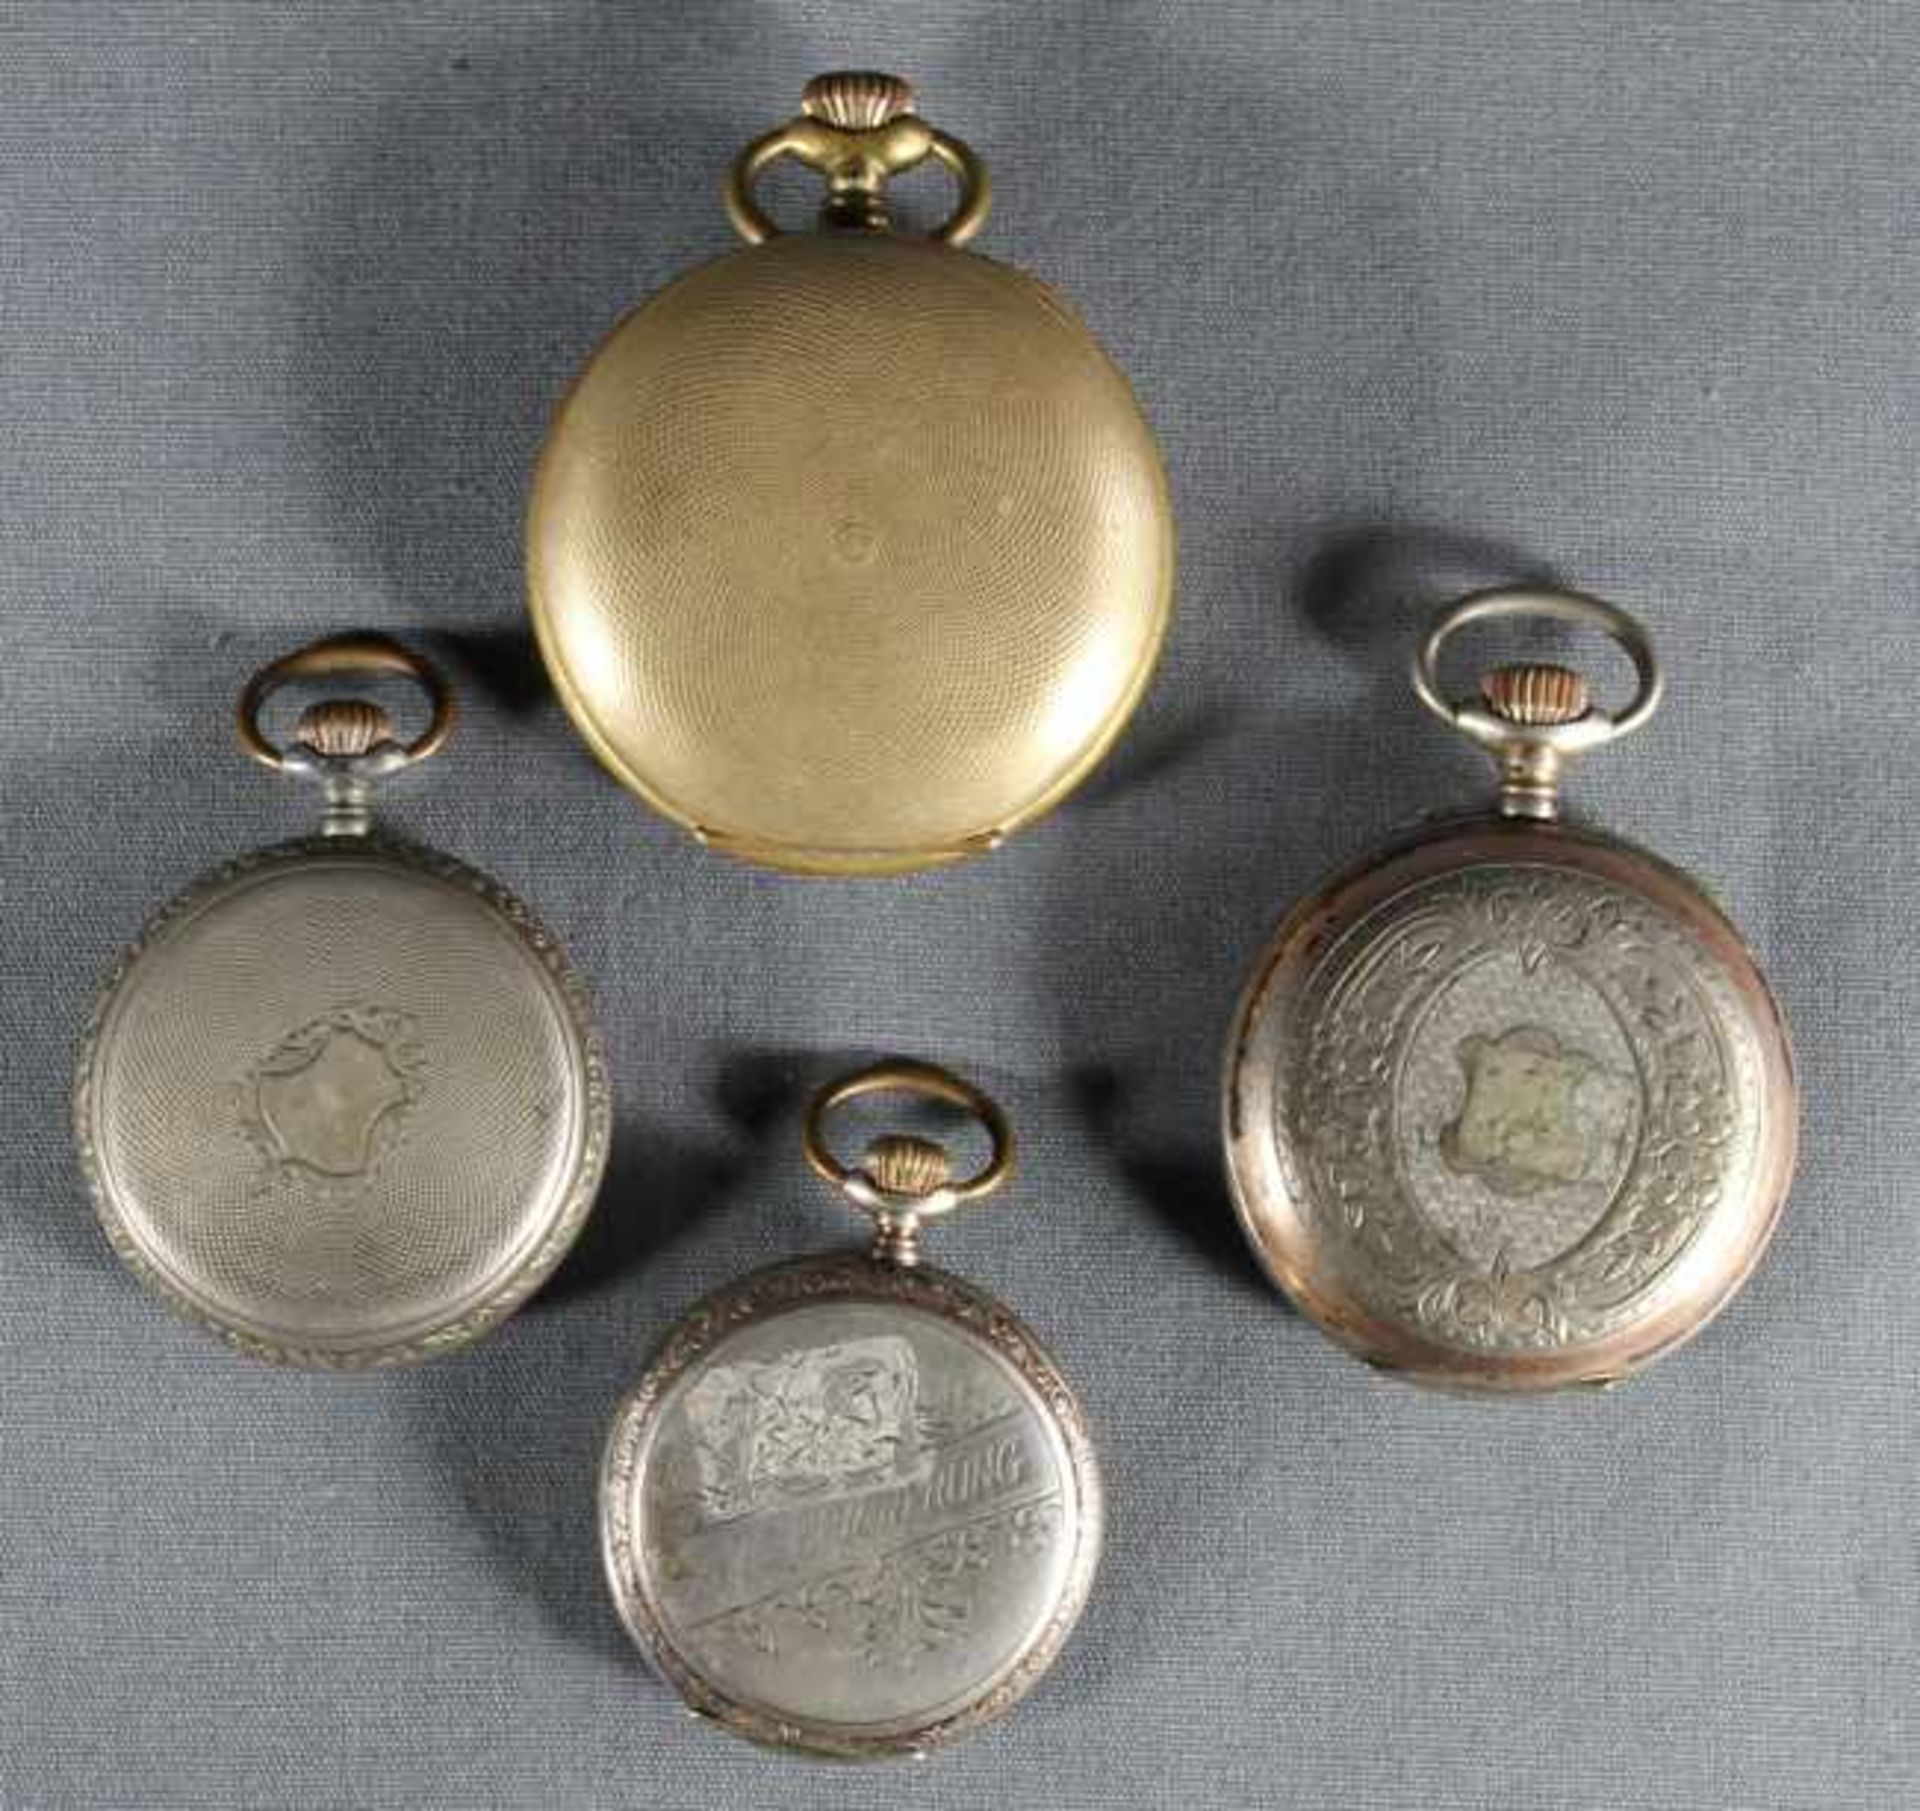 4 Taschenuhren Silber etc., punziert, verzierte Gehäuse, u.a. Rugby Watch, alle Uhren beschädigt, - Image 2 of 3